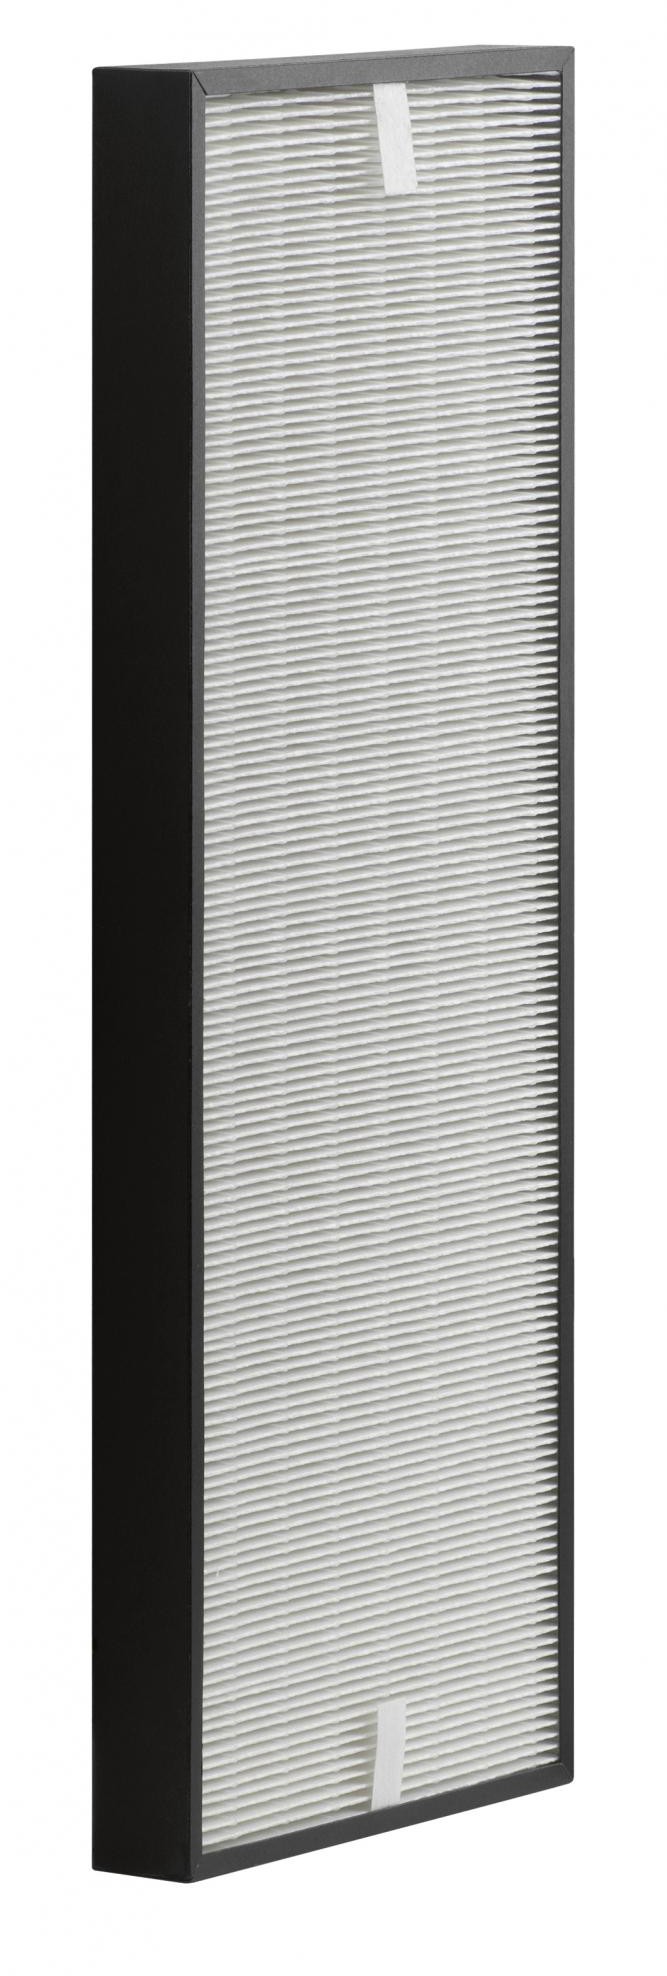 Rowenta filtr zapasowy do odświeżacza powietrza D6077F0 ALLERGY+ filtr XL przeznaczony dla PU60